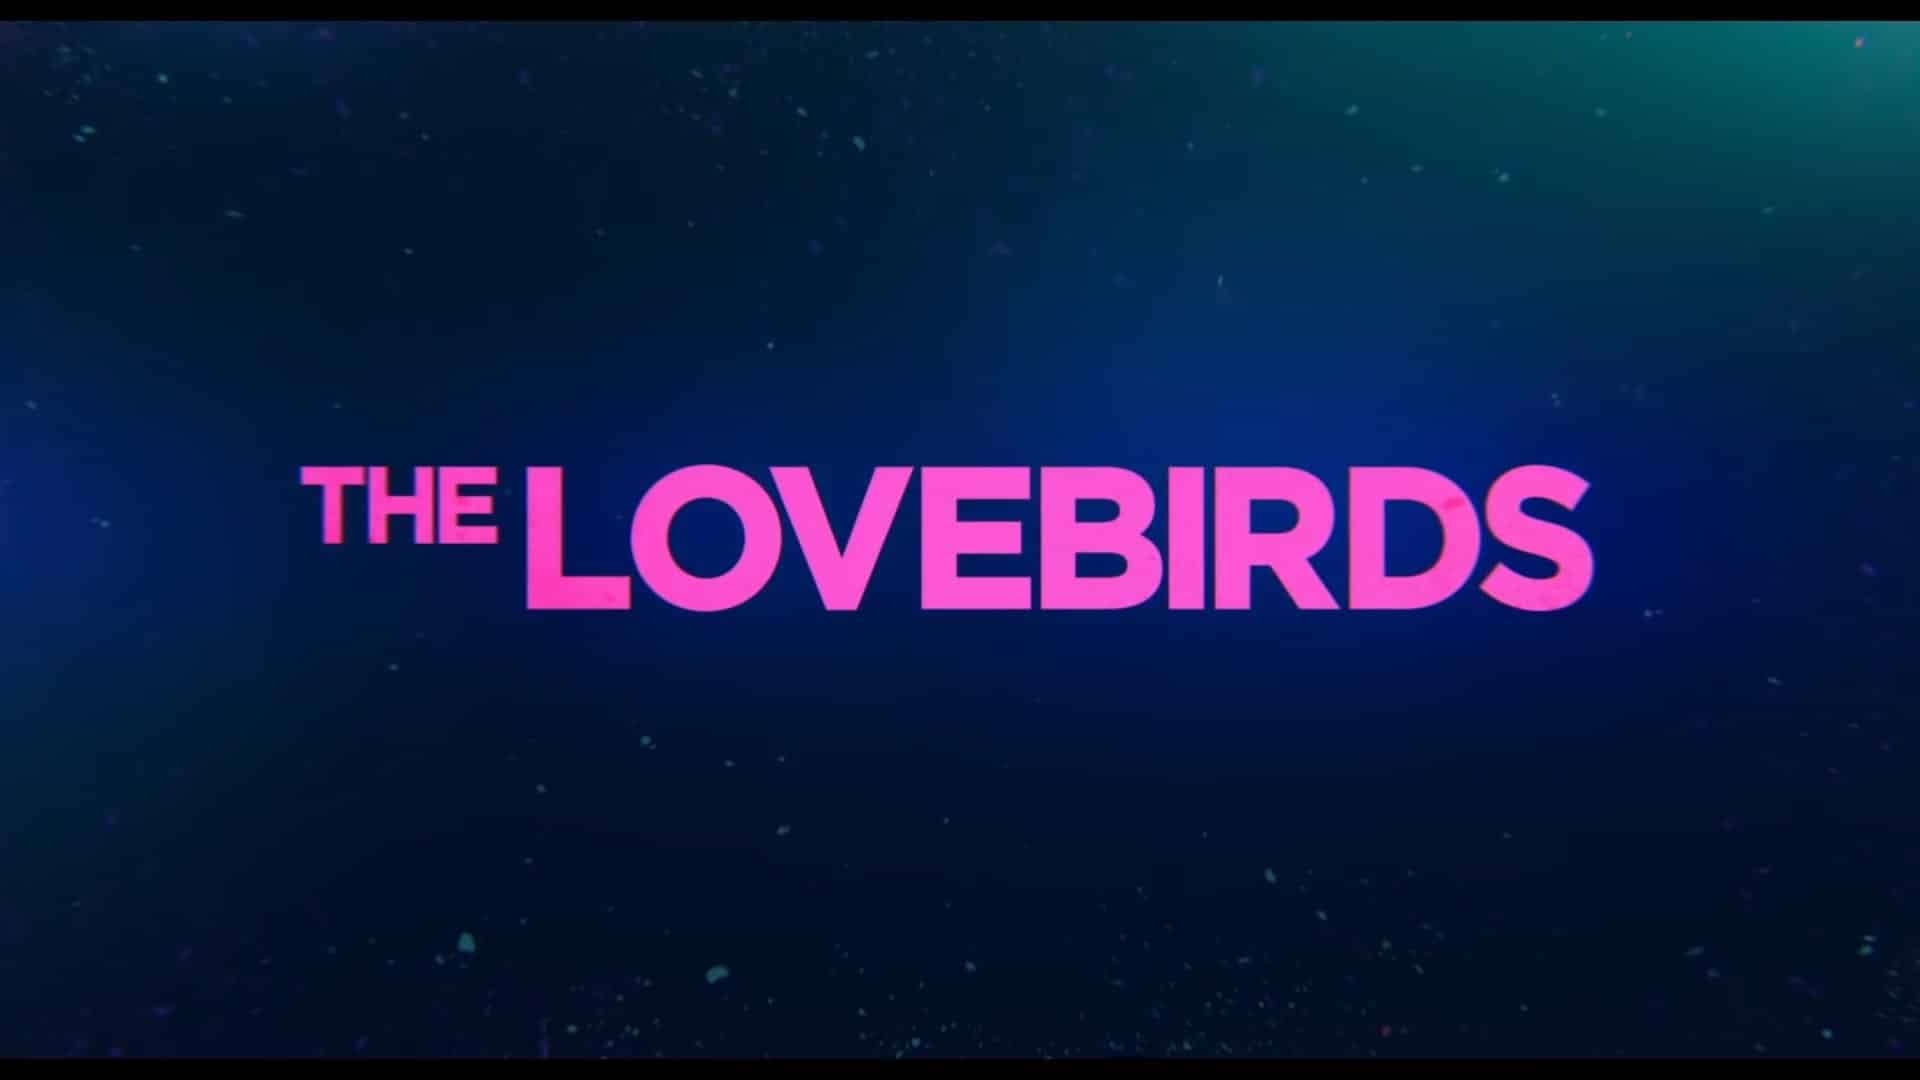 The Lovebirds Netflix Trailer, Netflix Comedy Movies, Best Netflix Comedies, Coming to Netflix in May 2020